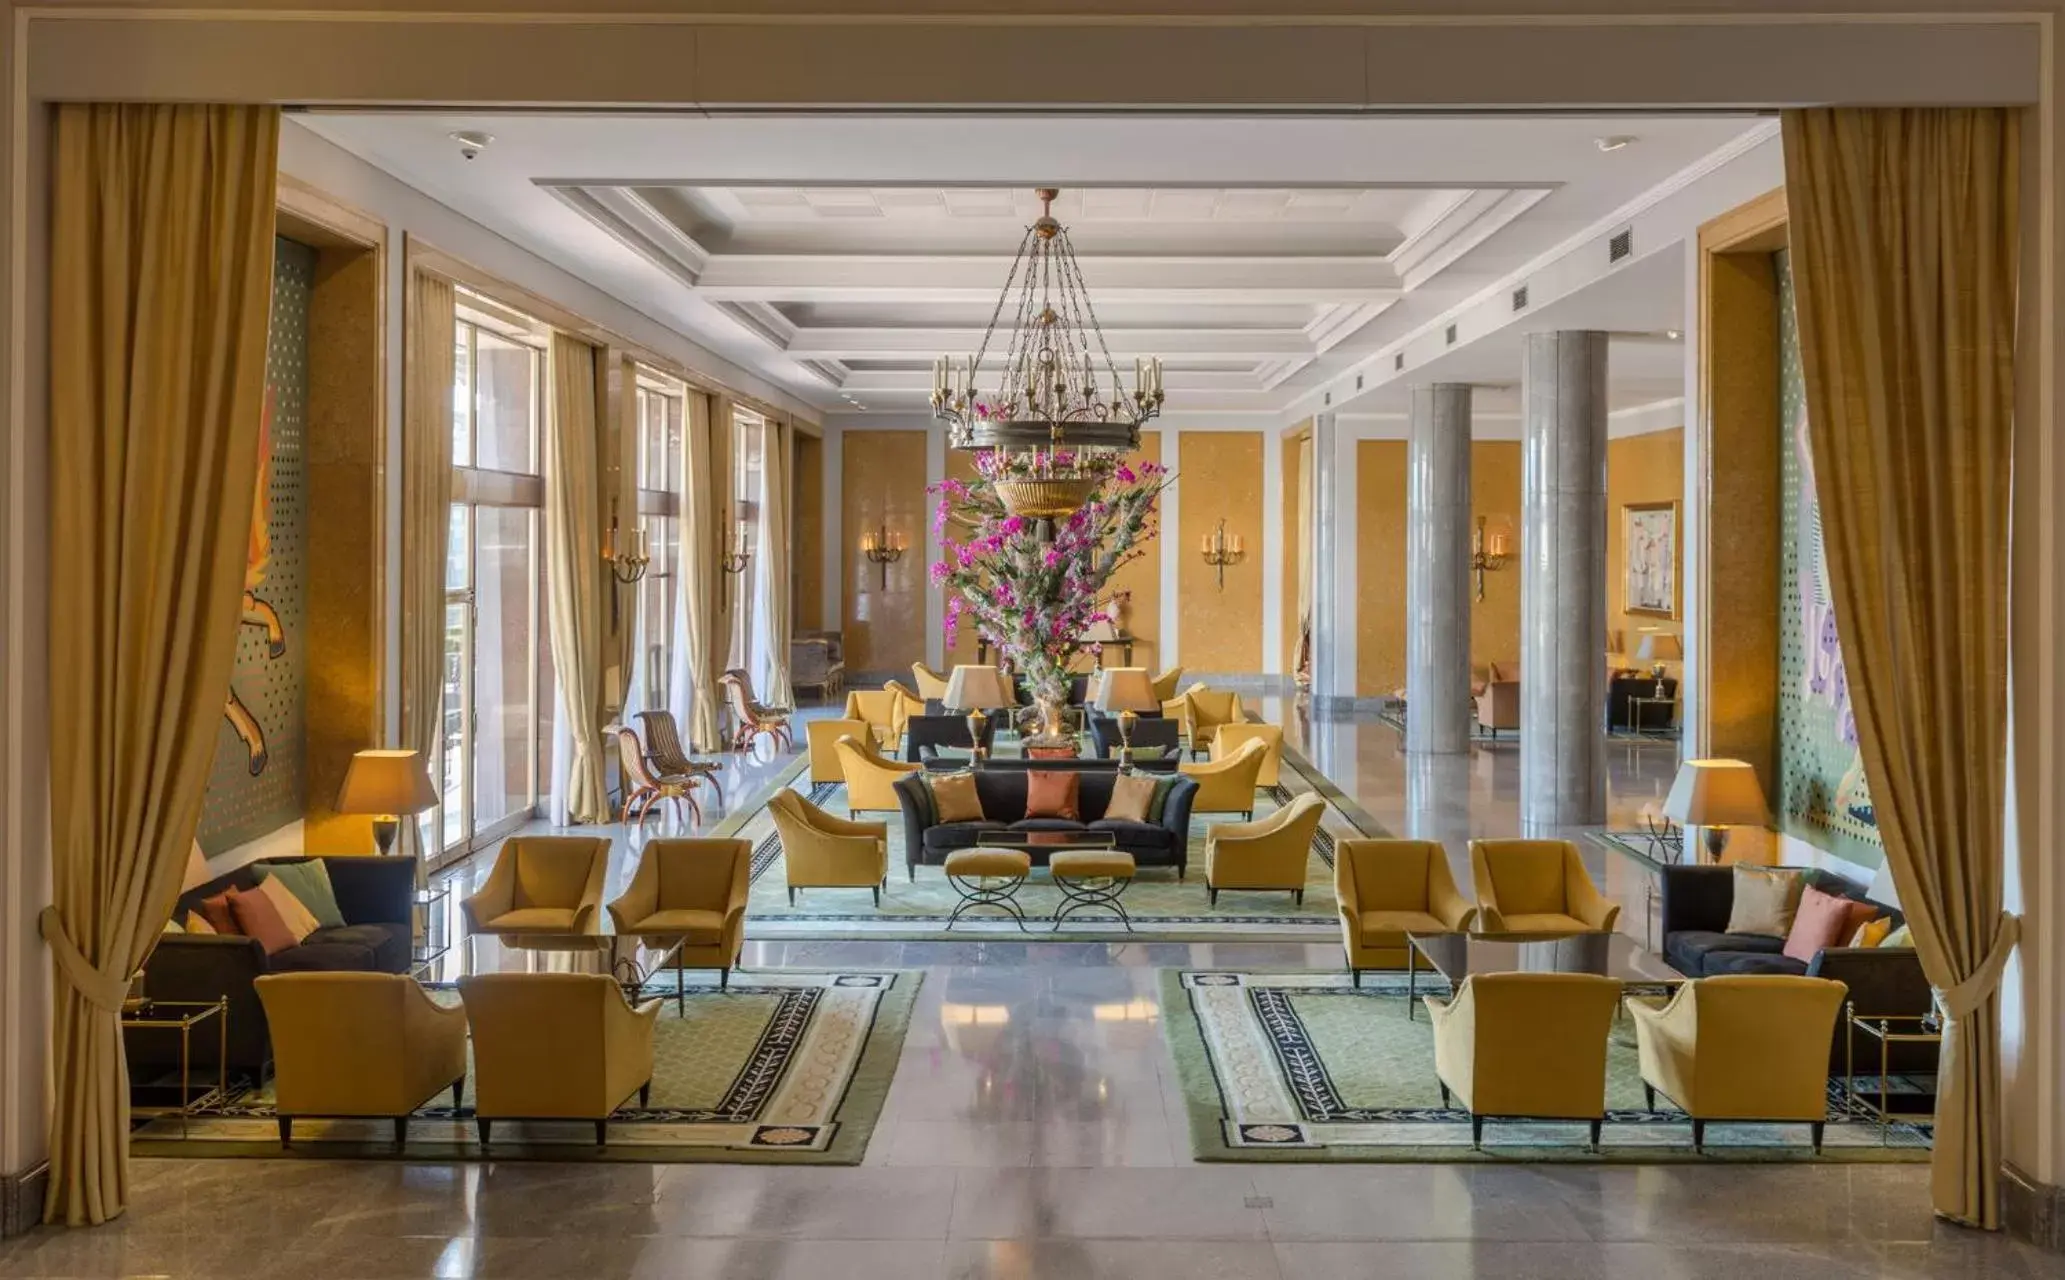 Lobby or reception in Four Seasons Hotel Ritz Lisbon